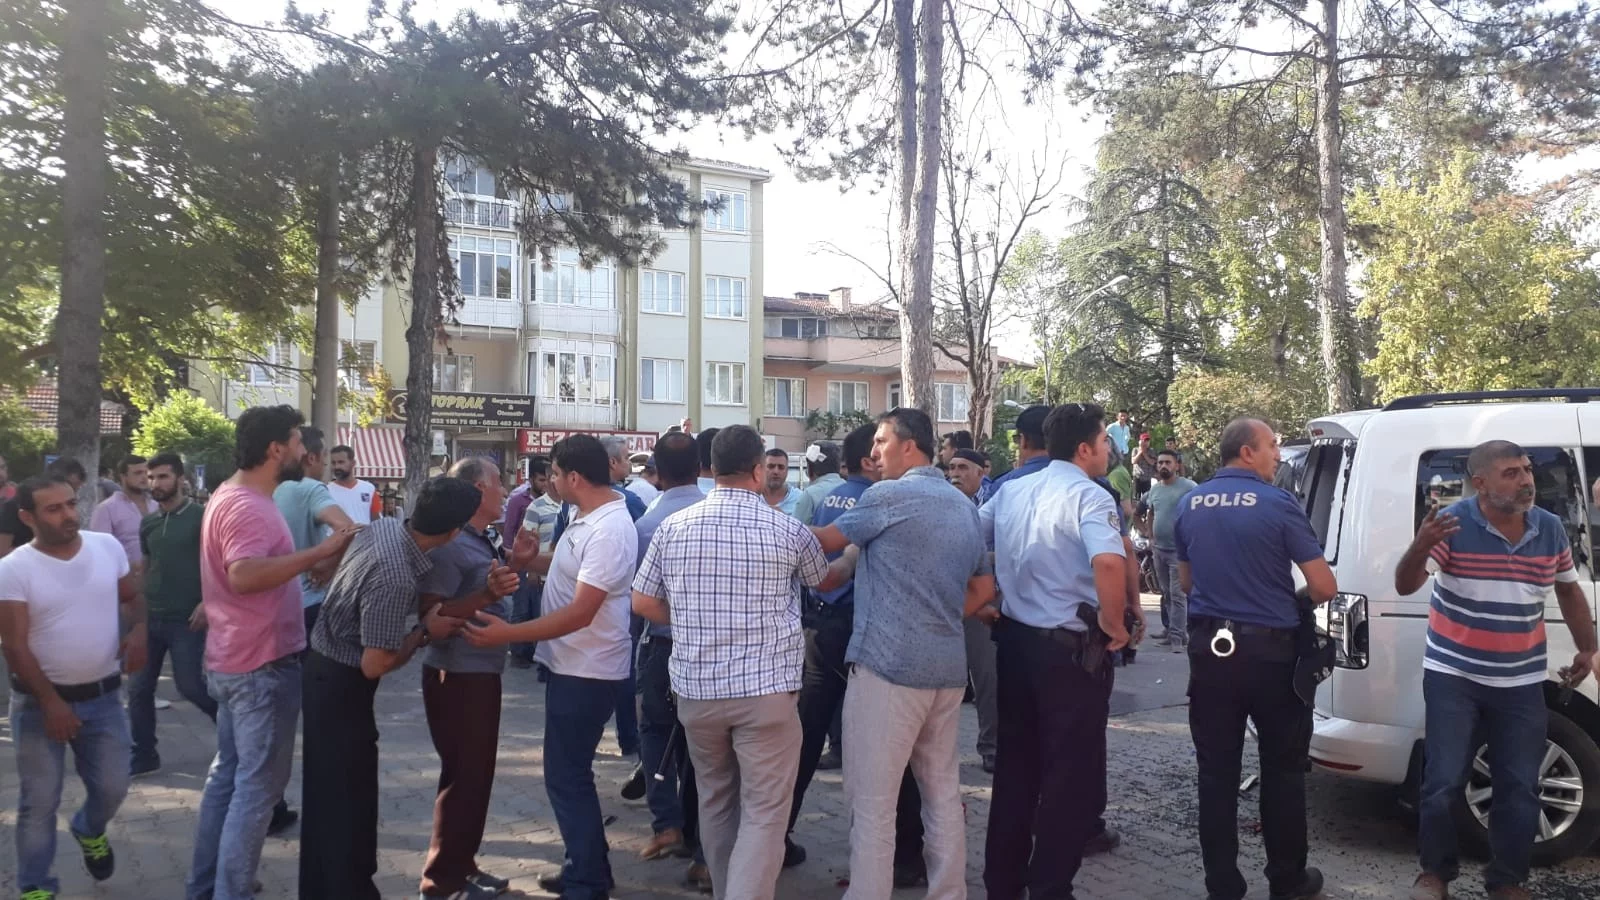 Bursa'da tehlikeli gerginlik...Hastane önündeki kavgaya polis ateş ederek müdahale etti